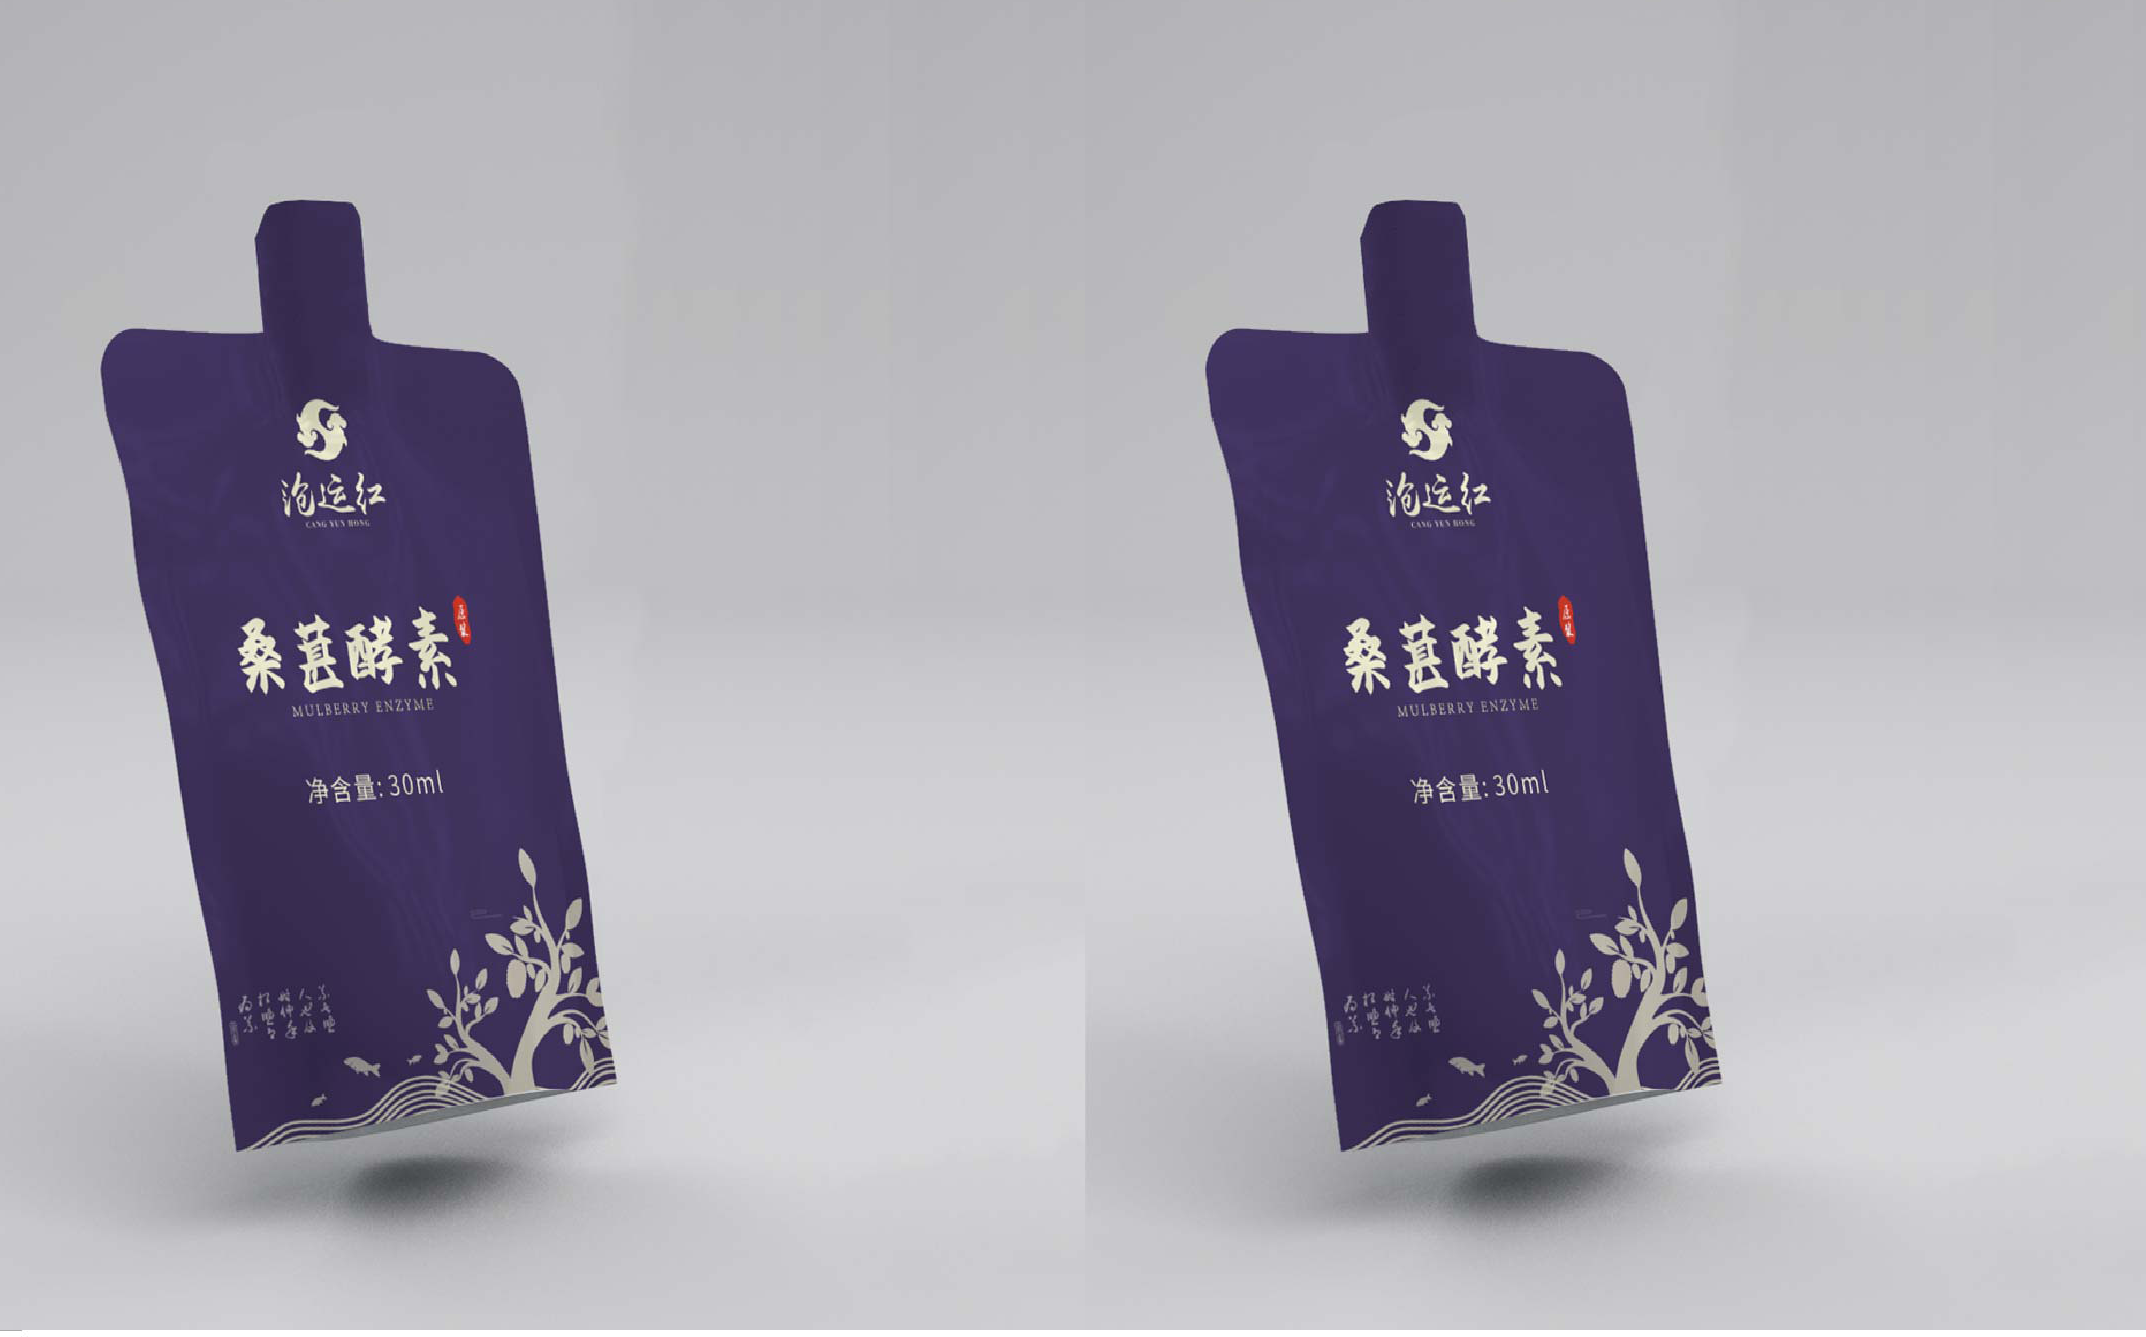 畅销广州礼盒包装设计公司作品排名前十名单发布 